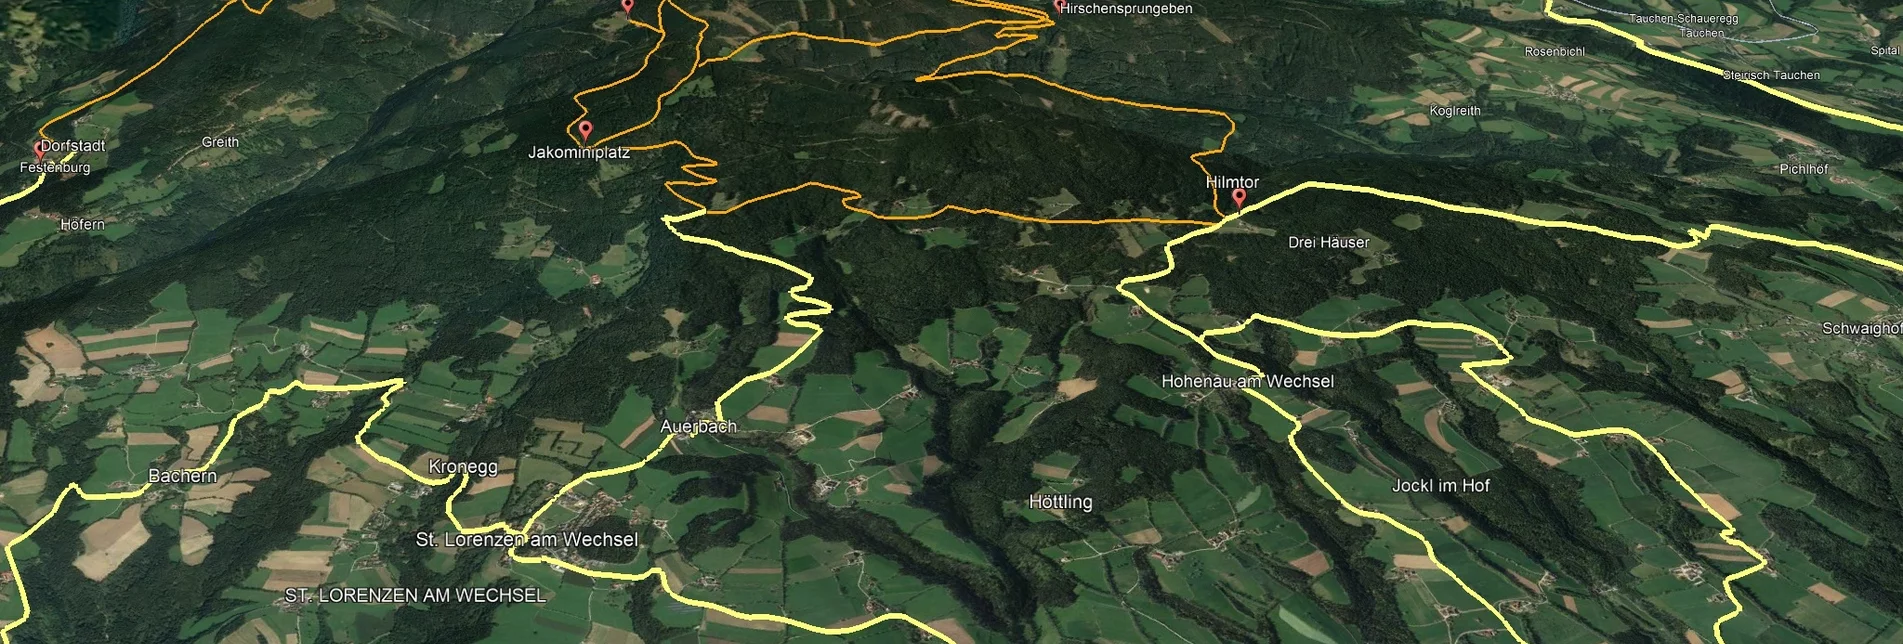 Mountain Biking Styrian Wexl Trails - Hilmtor Route - Touren-Impression #1 | © Verein Tourismusentwicklung Steirischer Wechsel